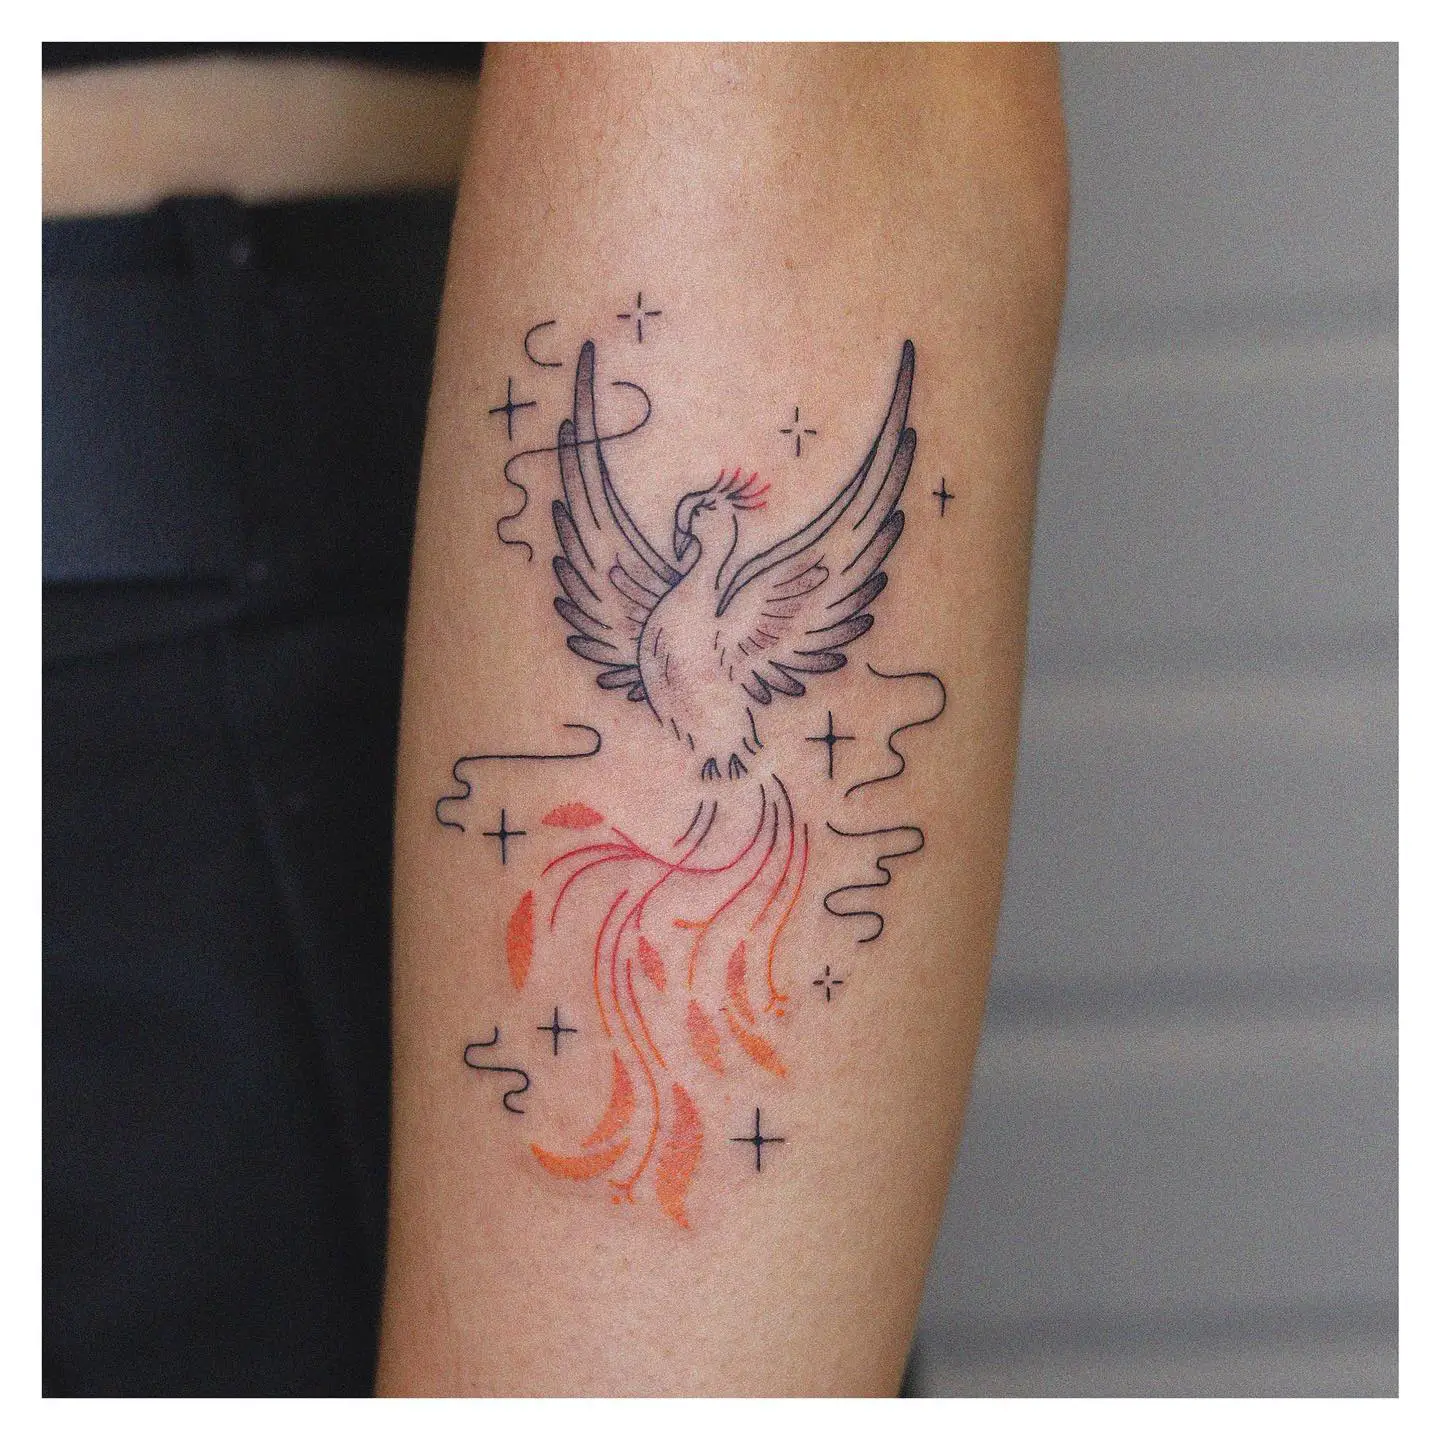 Phoenix tattoo by notsoevil.ink